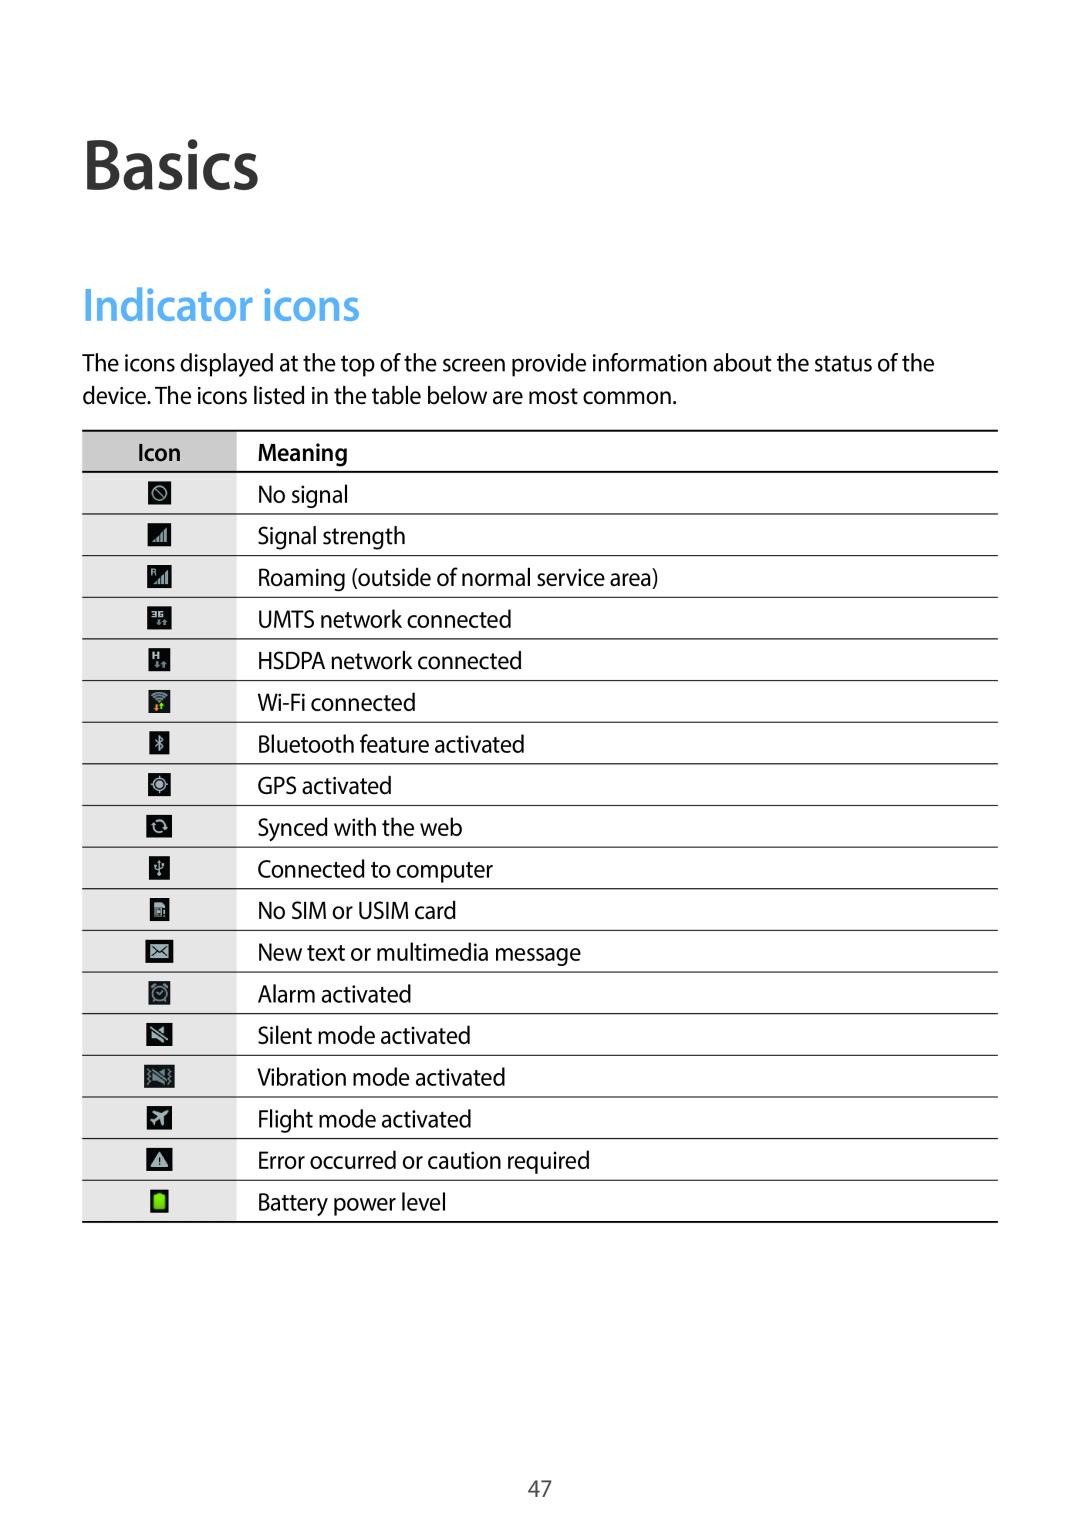 Samsung EK-GC100 user manual Basics, Indicator icons, Icon Meaning 